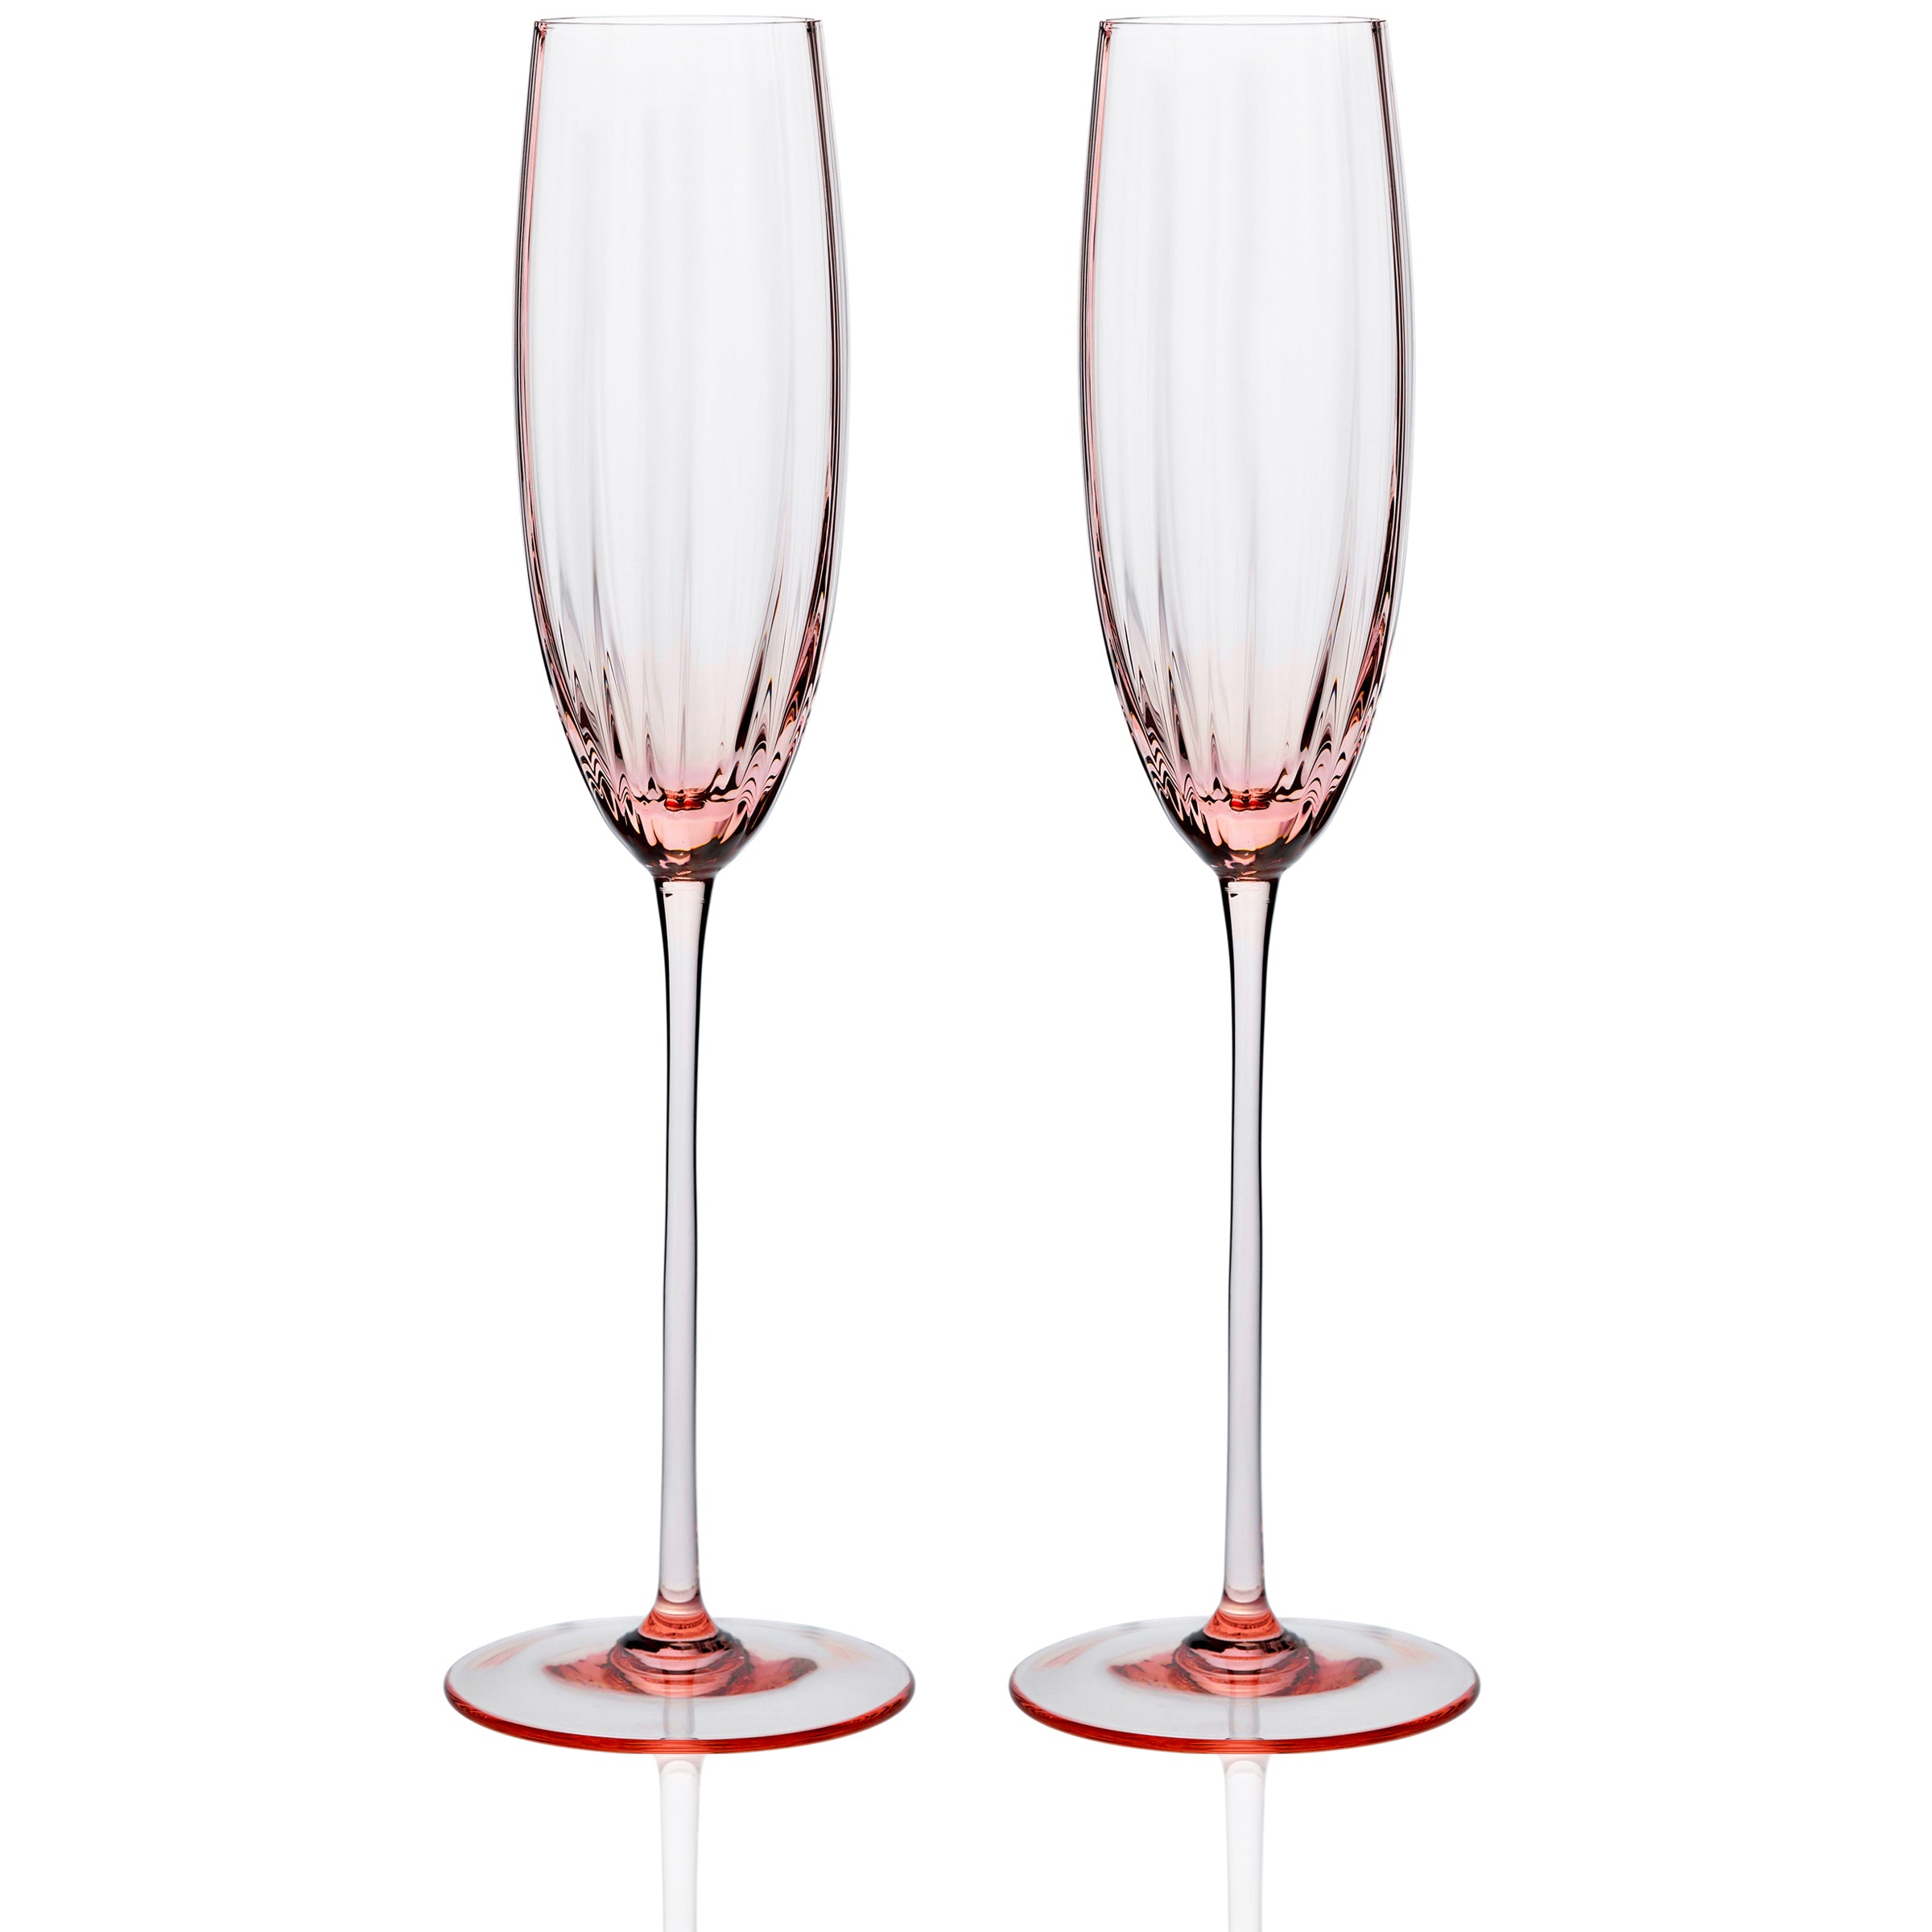 Set of 3Vintage Hand Blown Pink Blush Wine Glasses Long Stem Large Glasses